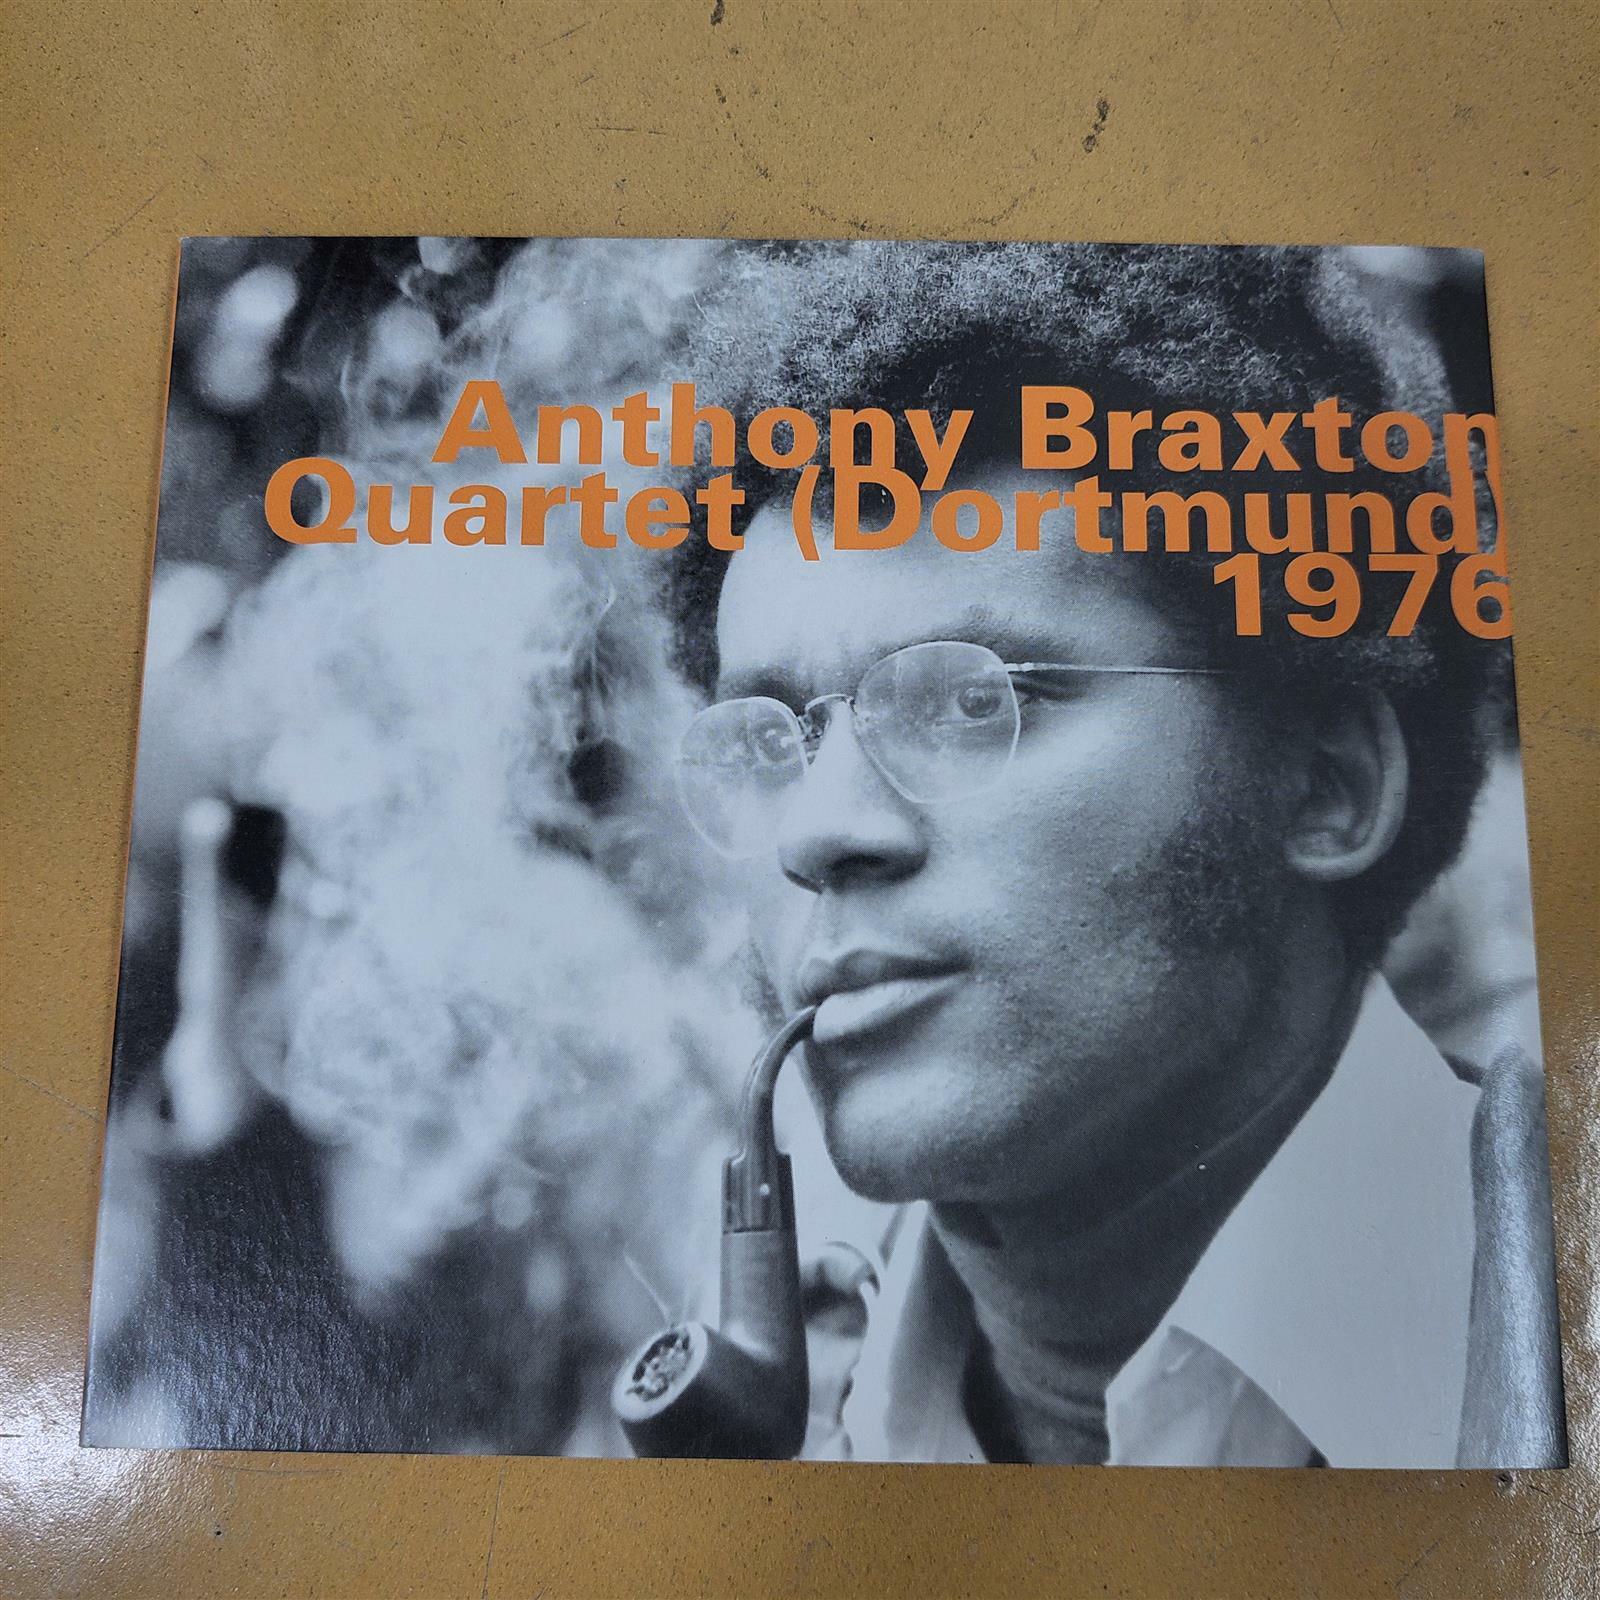 [중고] Anthony Braxton – Quartet (Dortmund) 1976 (2001, CD)